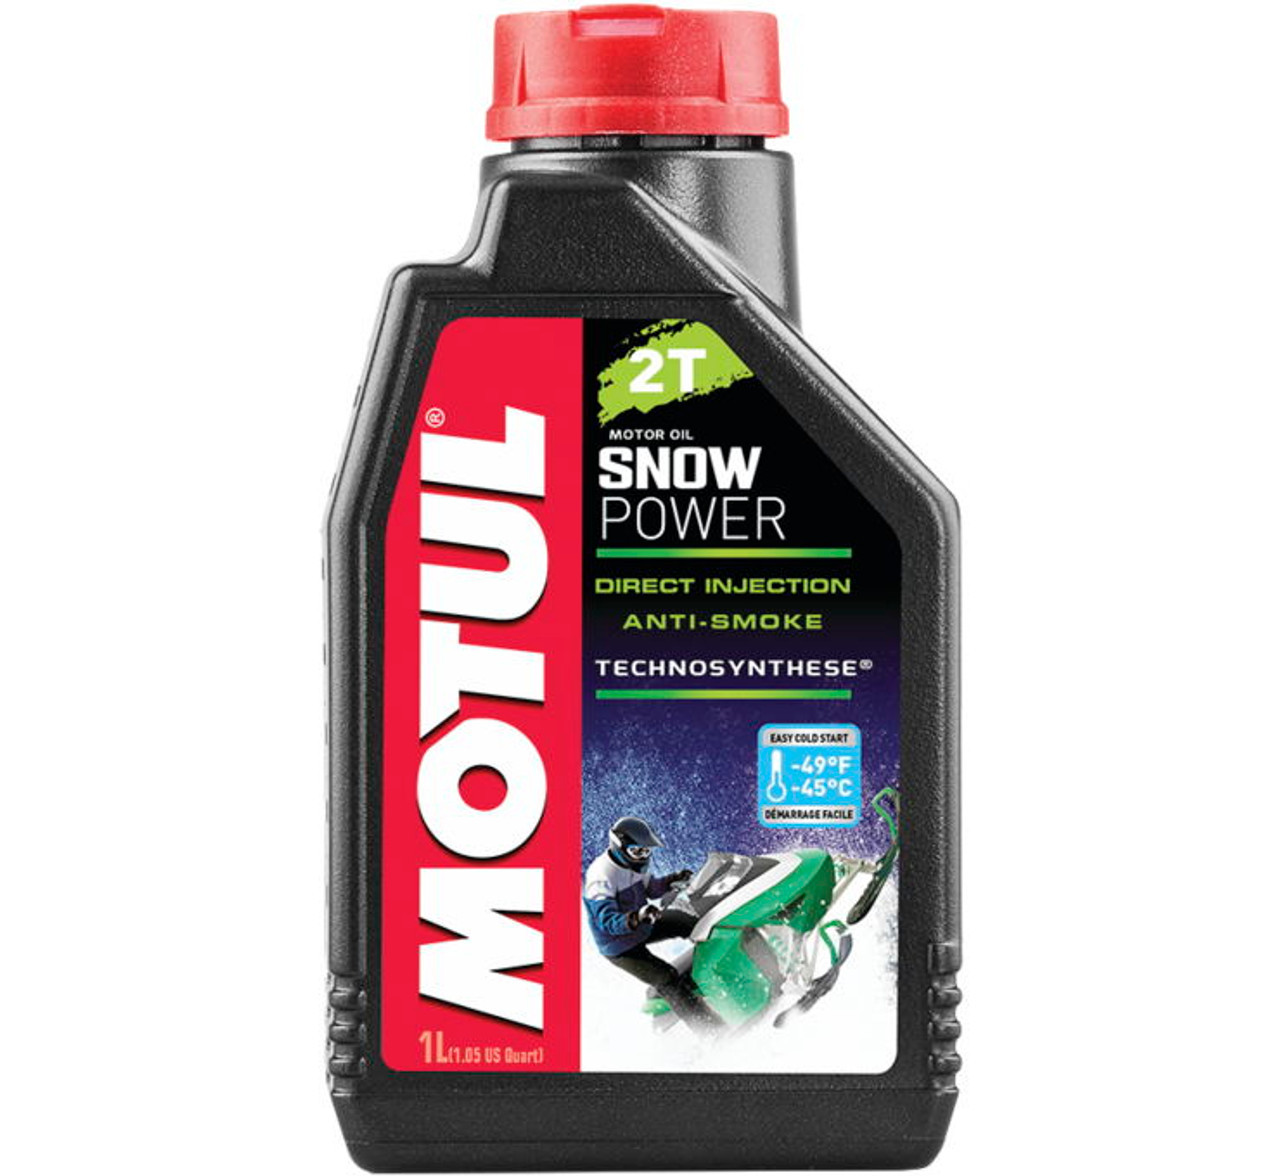 Масло Motul SNOWPOWER 2T EST моторное, полусинтетическое для двухтактных двигателей снегоходов, 1 литр